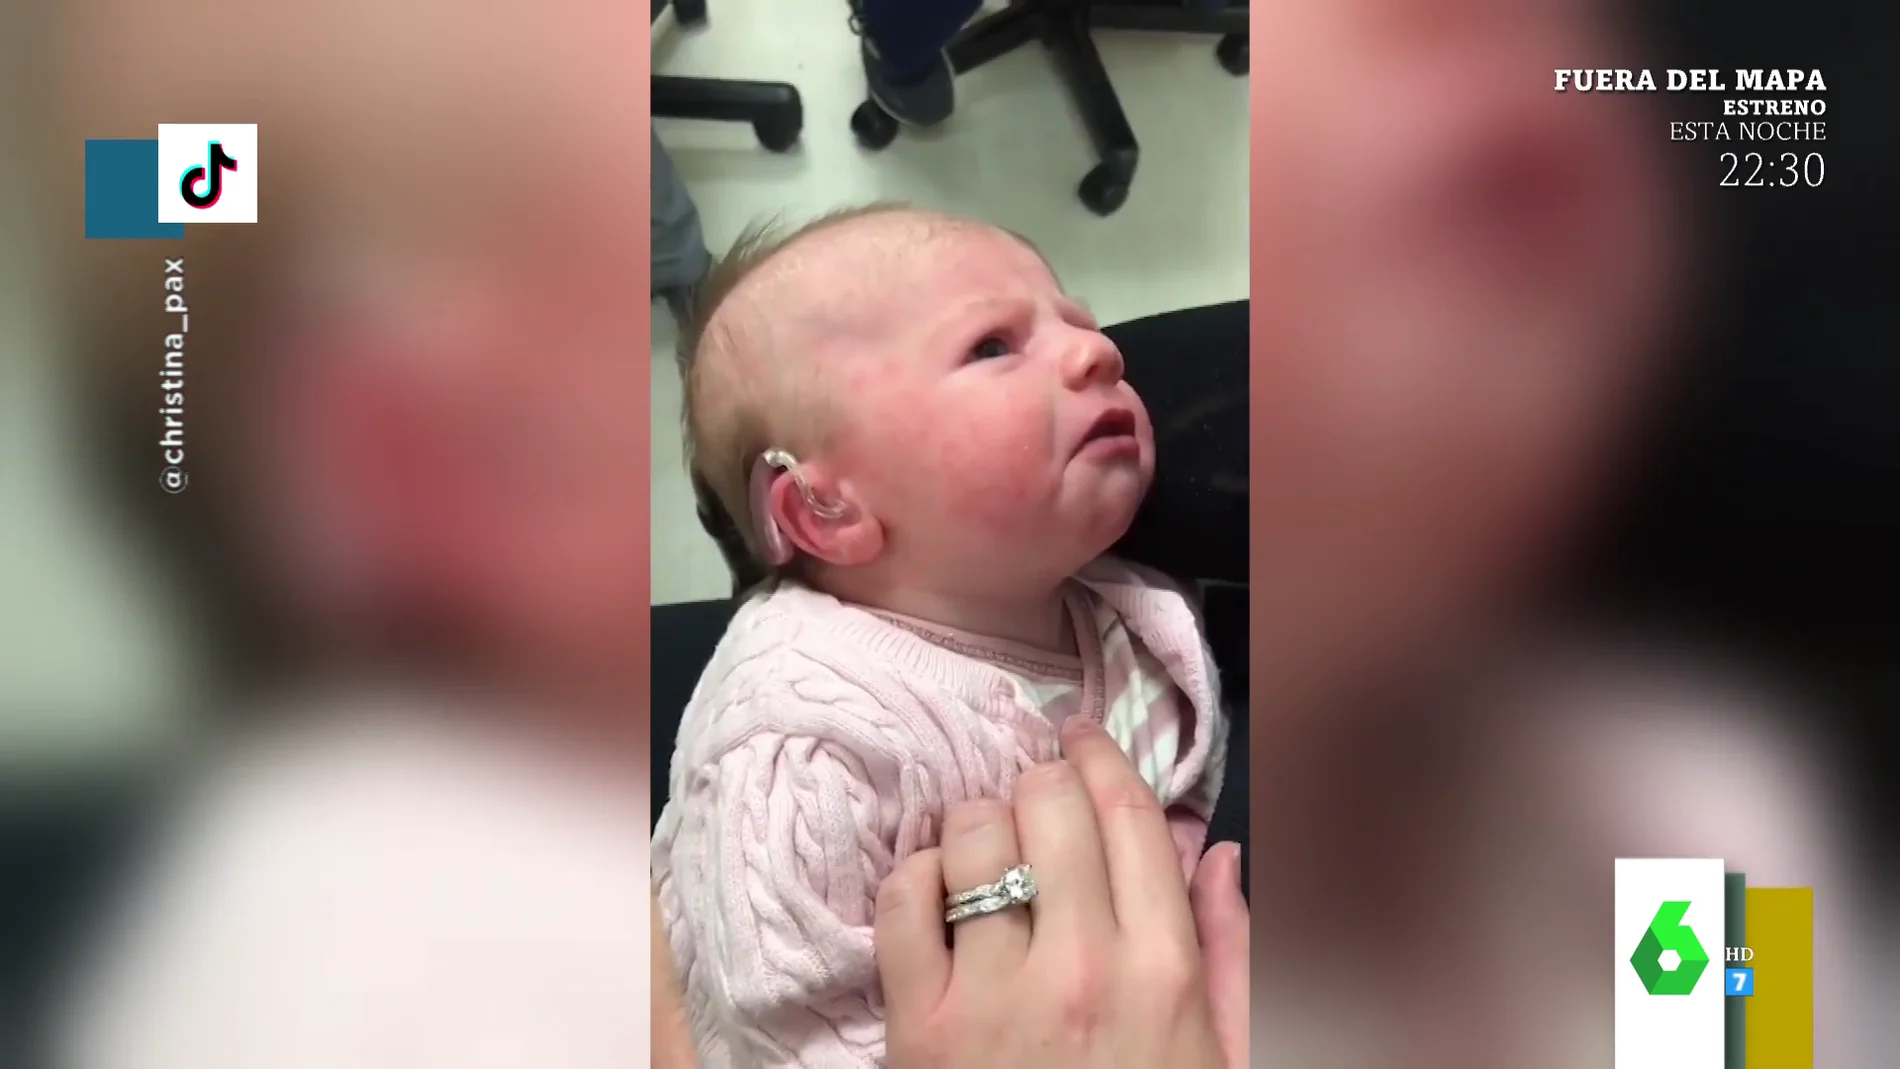 La emotiva reacción de un bebé al escuchar por primera vez la voz de su madre tras recibir un implante coclear